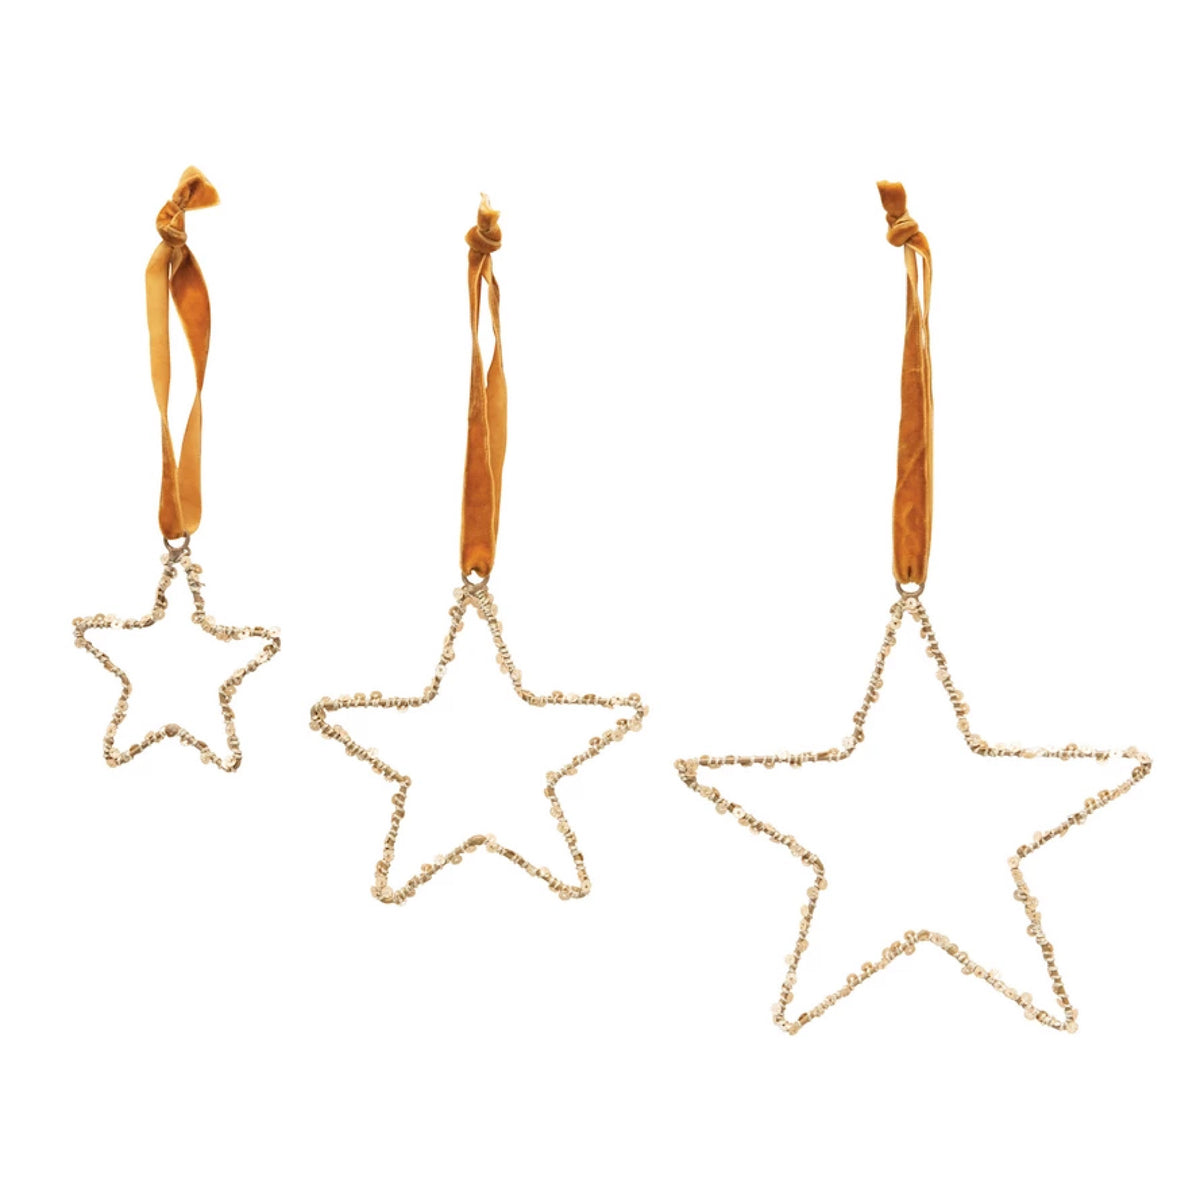 Set of 3 Sequin Star Ornaments